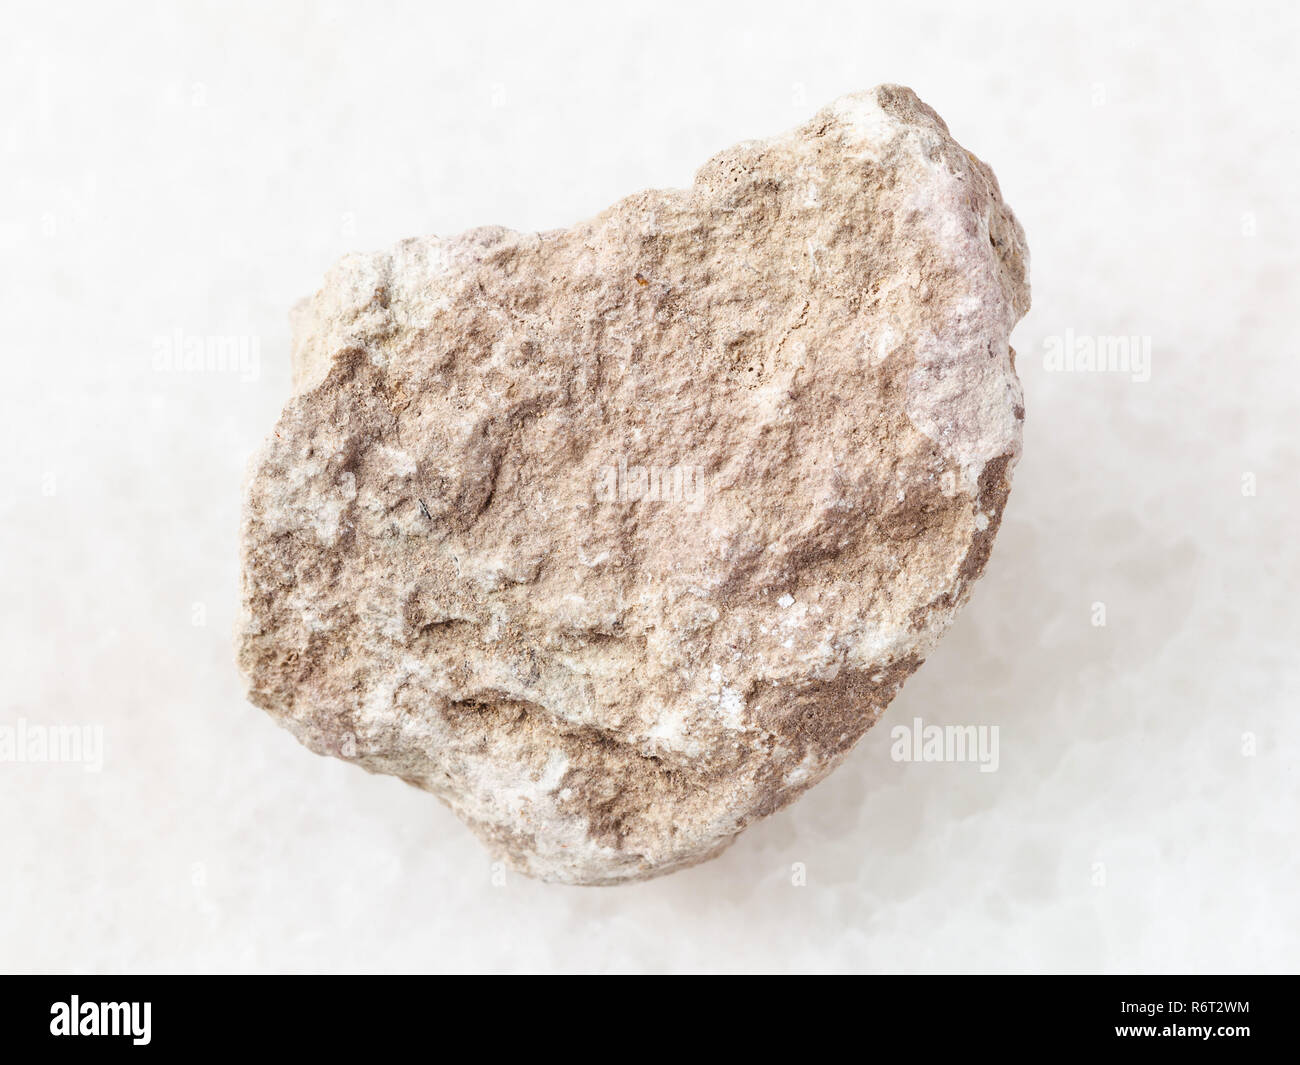 rough marl stone on white Stock Photo